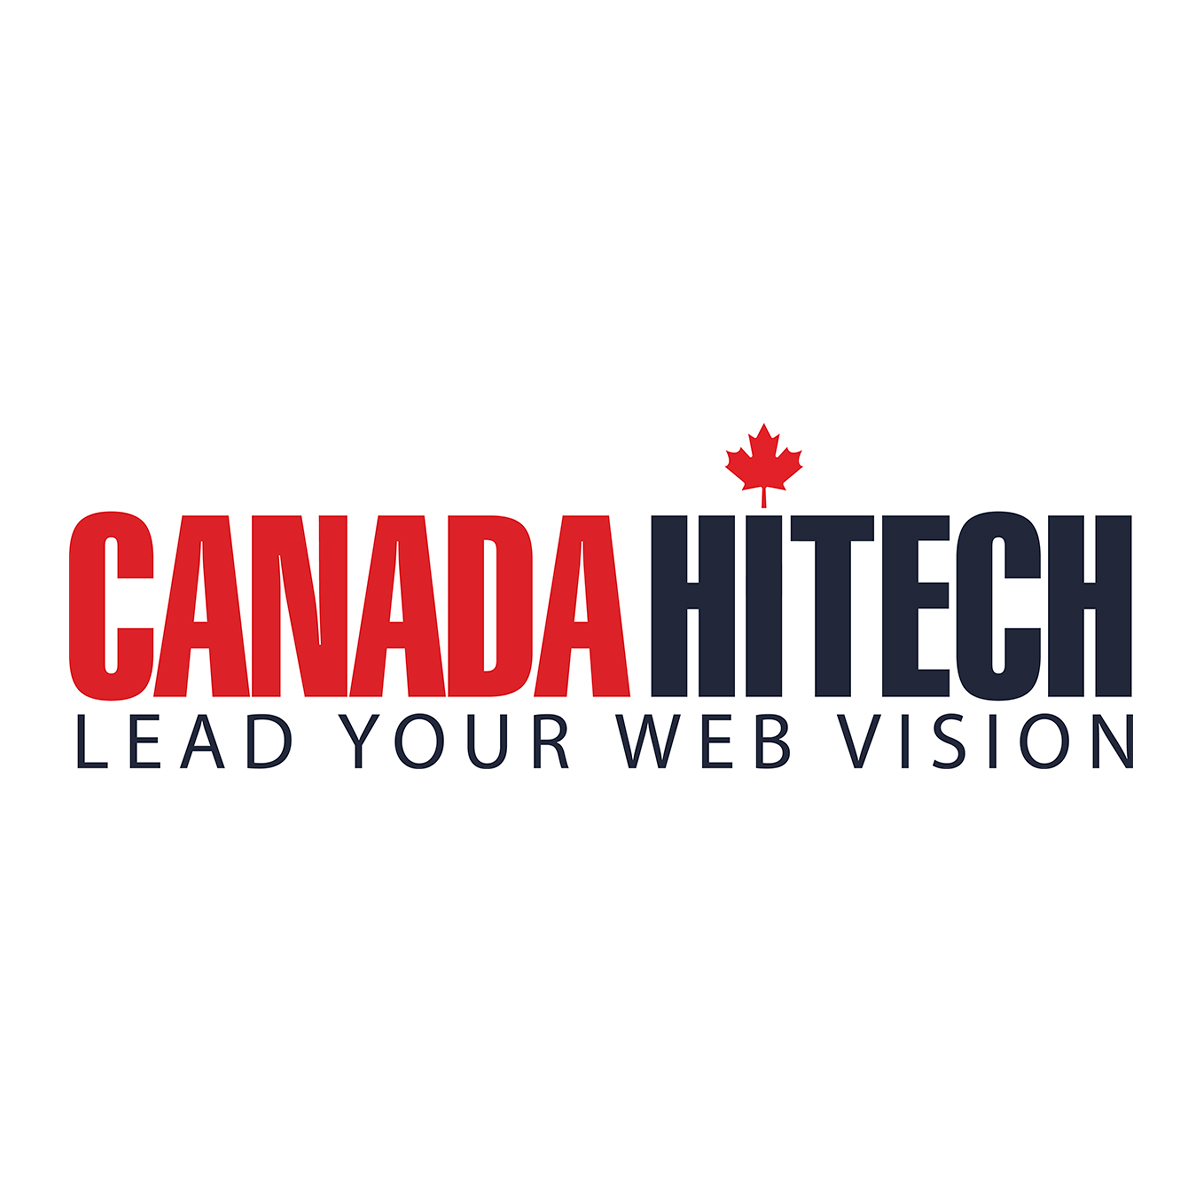 (c) Canadahitech.com